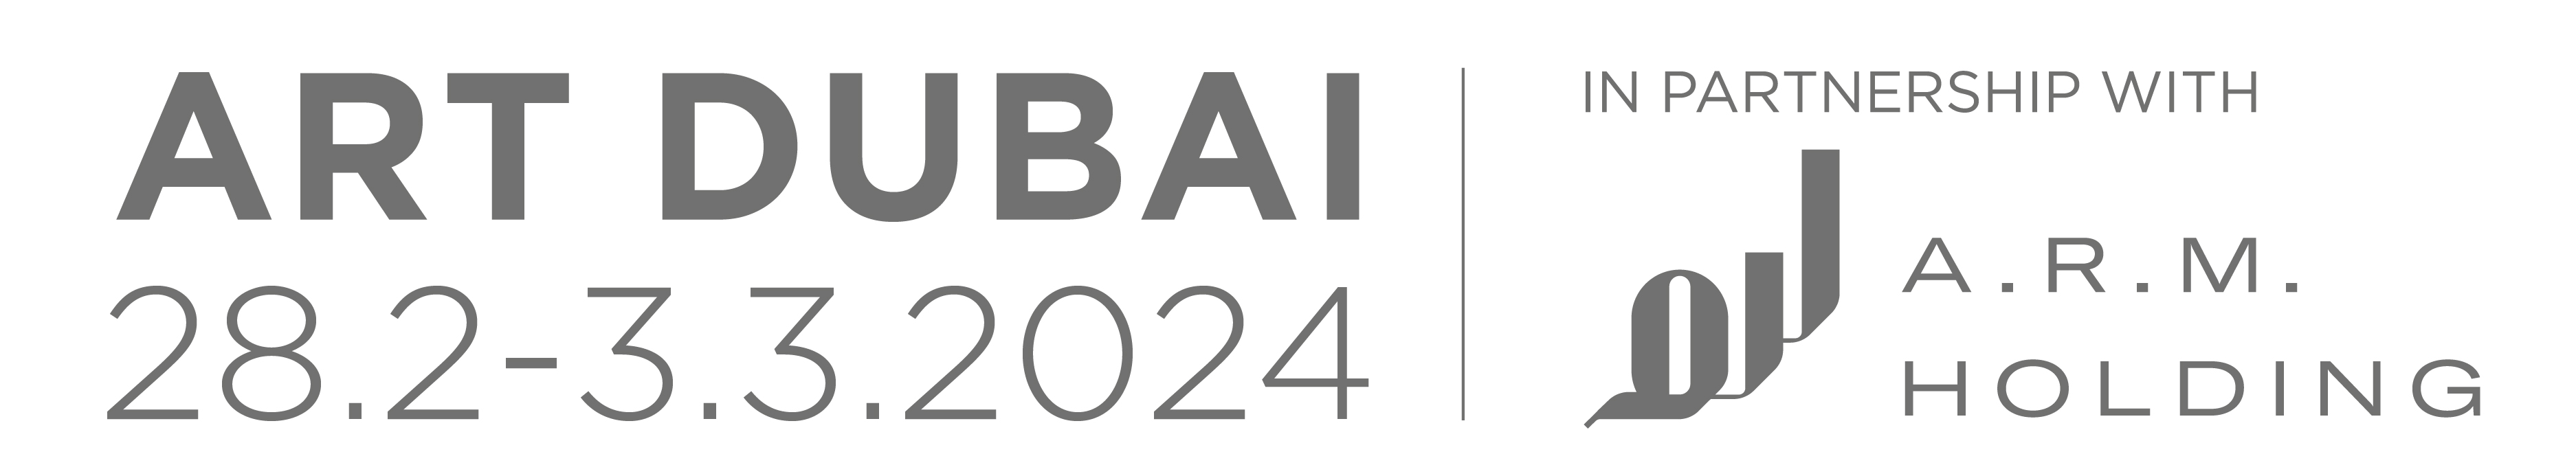 ArtDubai logo